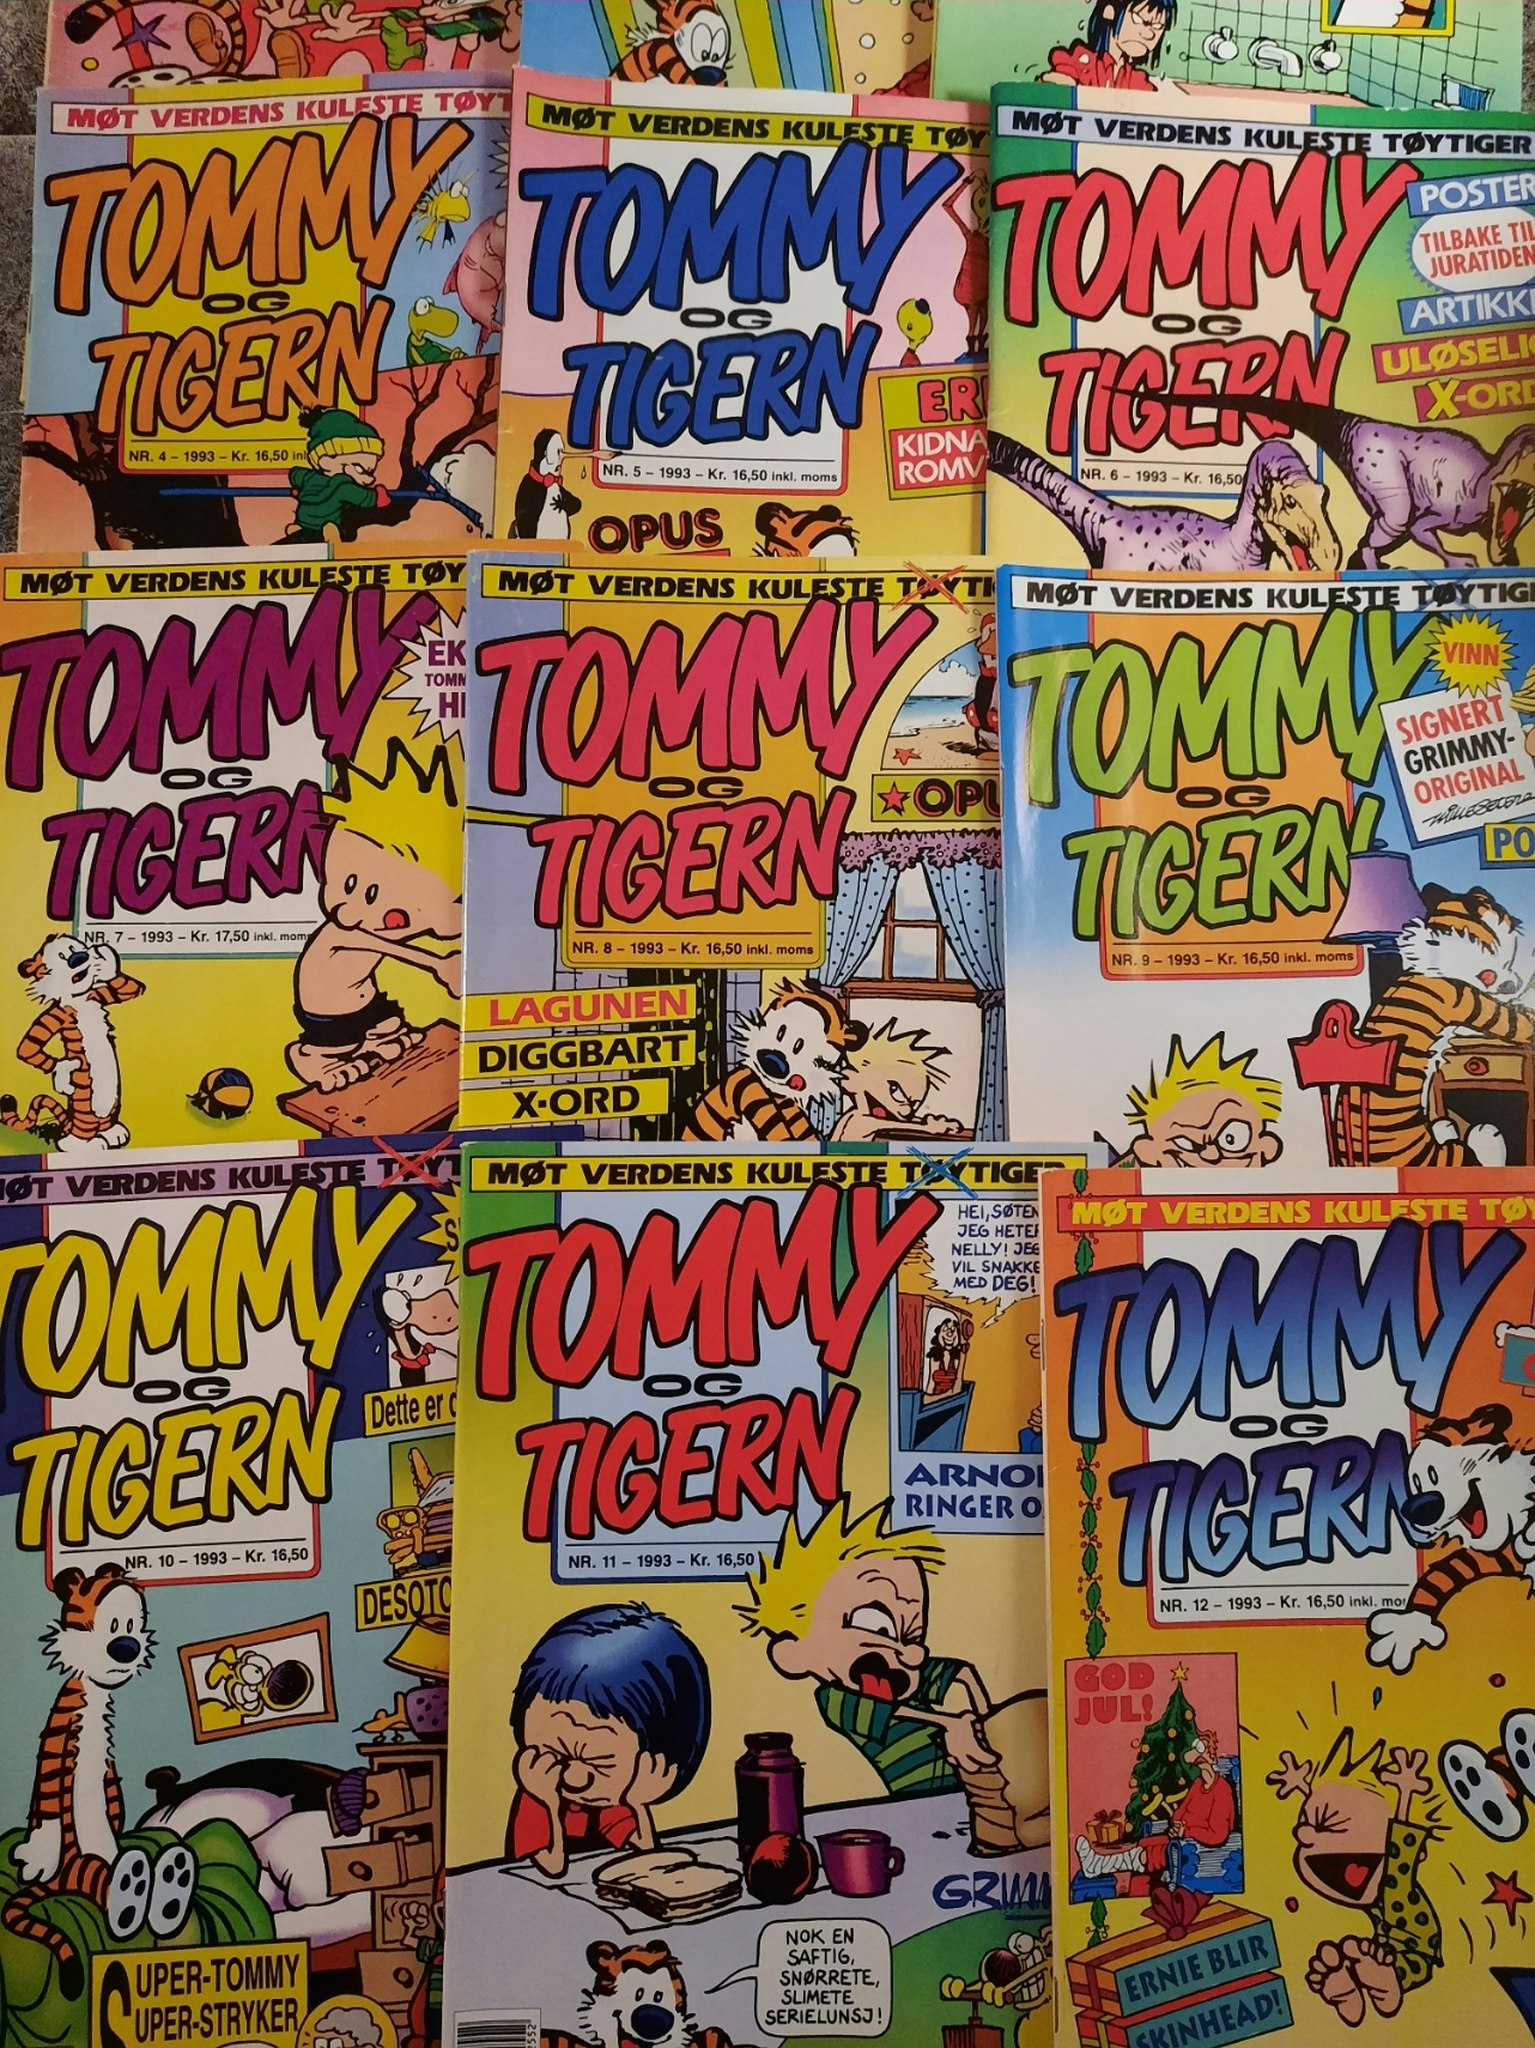 Tommy og Tigern 1993 komplett